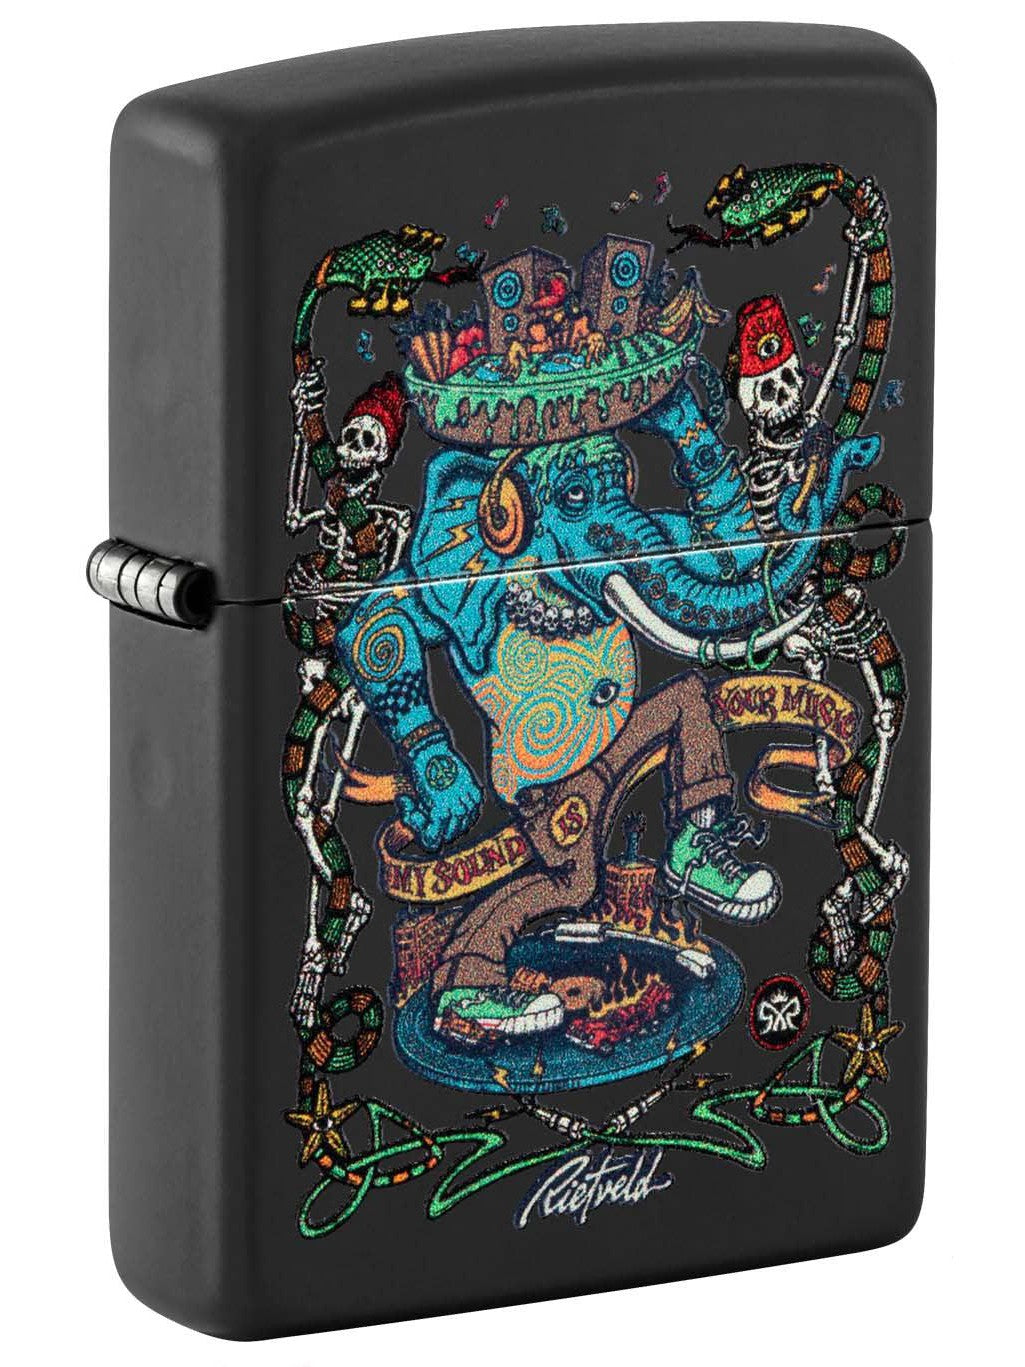 Zippo Lighter: Elephant Noise by Rick Rietveld, Black Light - Black Matte 48673